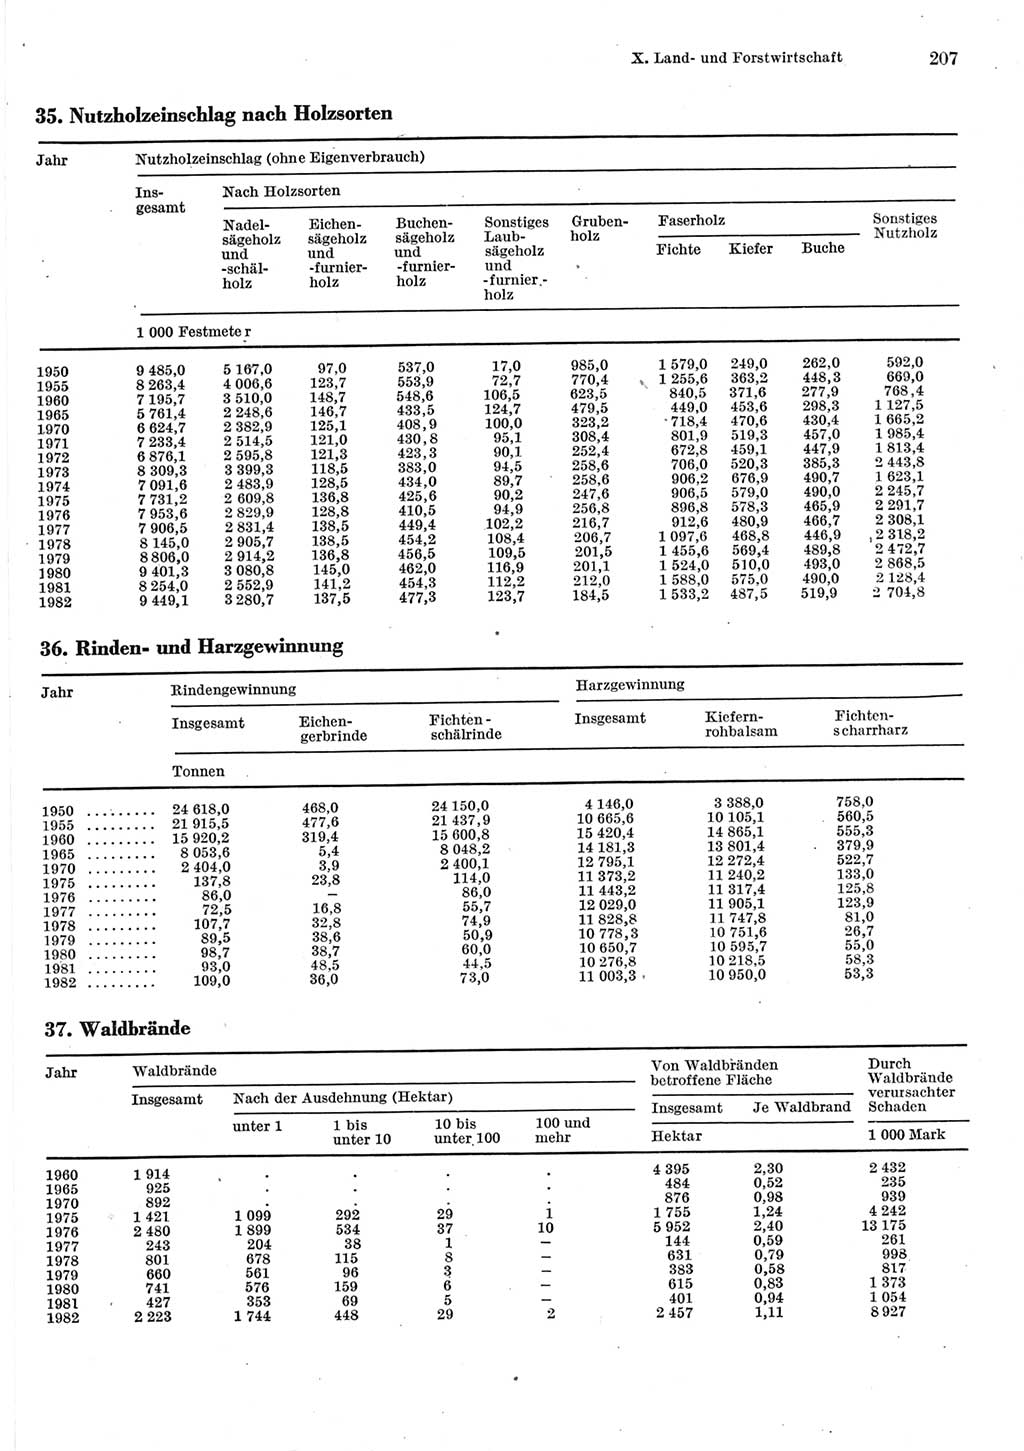 Statistisches Jahrbuch der Deutschen Demokratischen Republik (DDR) 1983, Seite 207 (Stat. Jb. DDR 1983, S. 207)